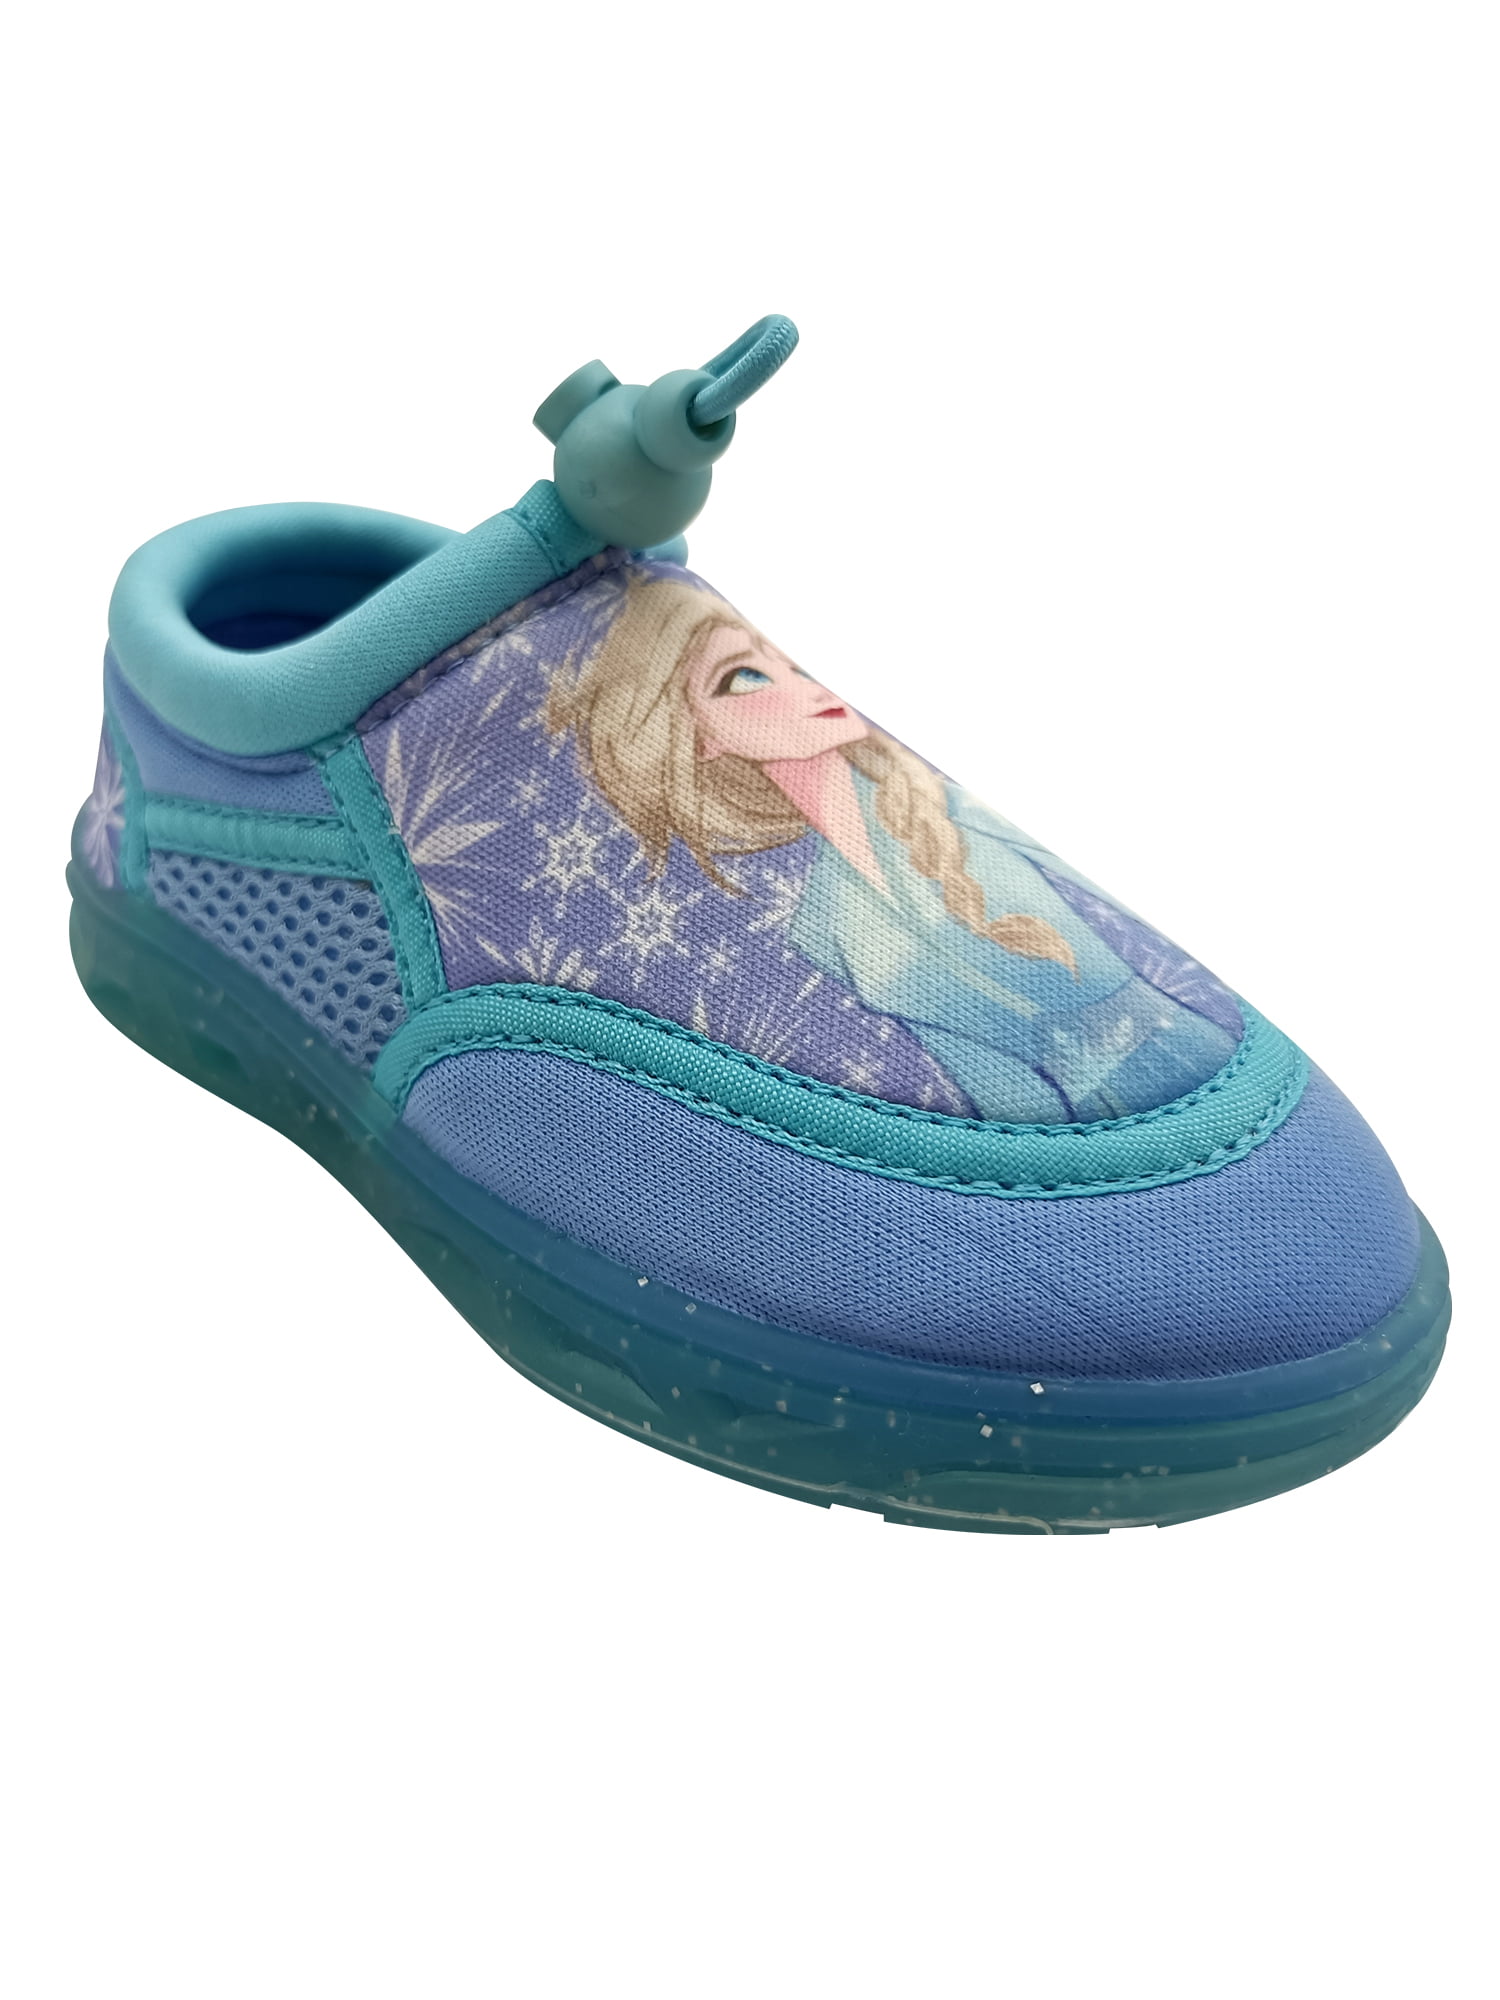 disney aqua shoes